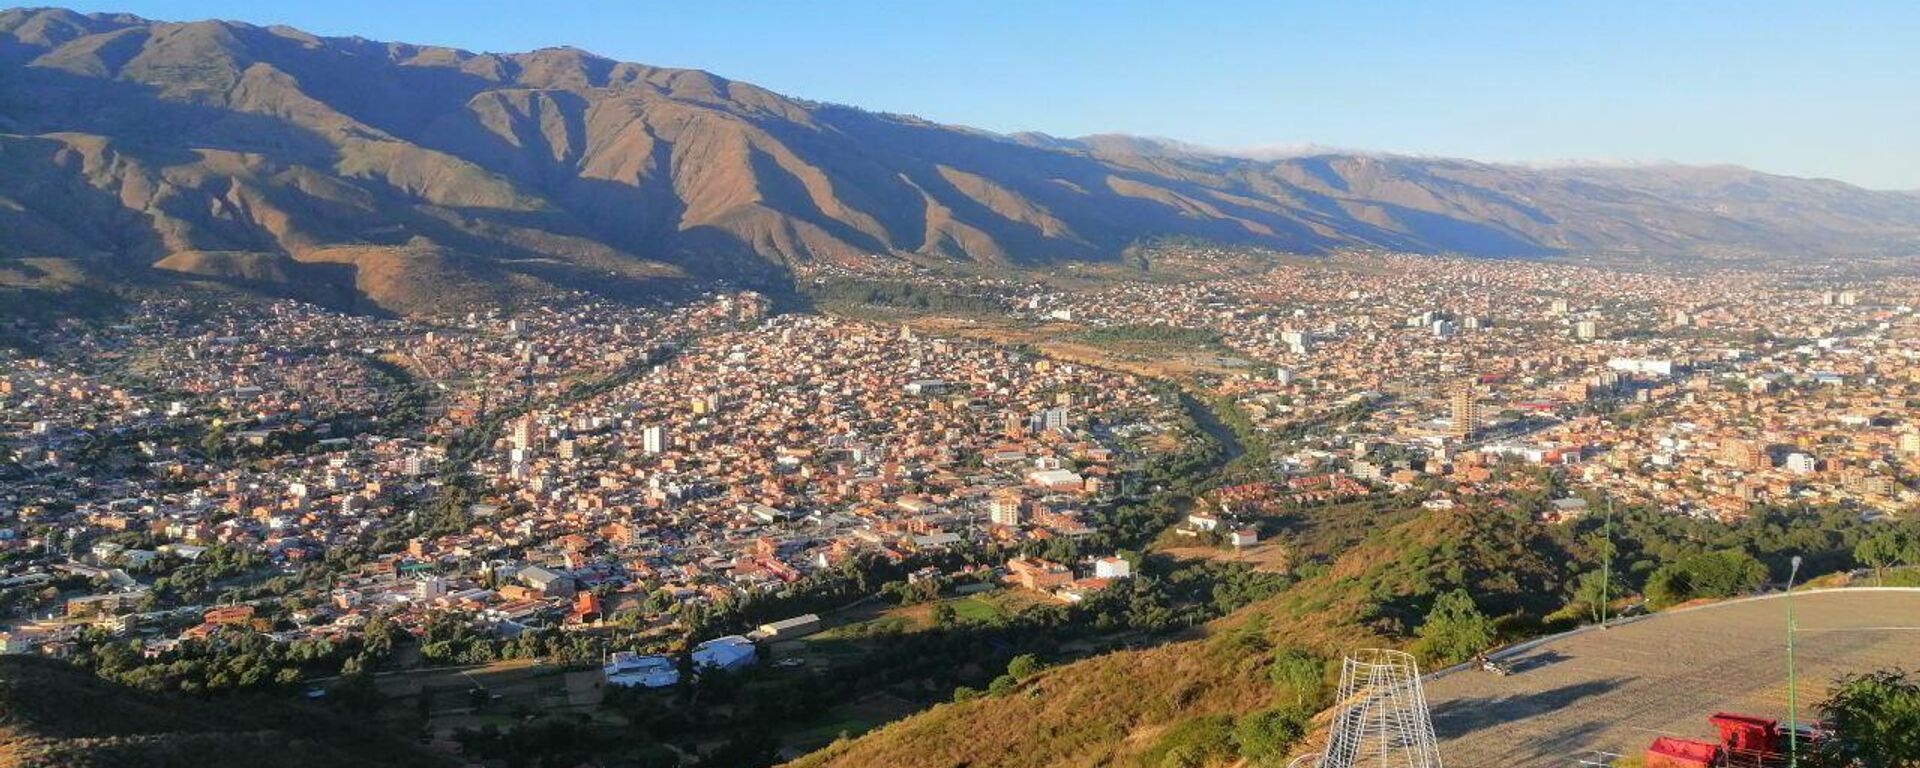 La ciudad de Cochabamba vista desde el mirador del Cristo de la Concordia en mayo de 2023 - Sputnik Mundo, 1920, 28.12.2023